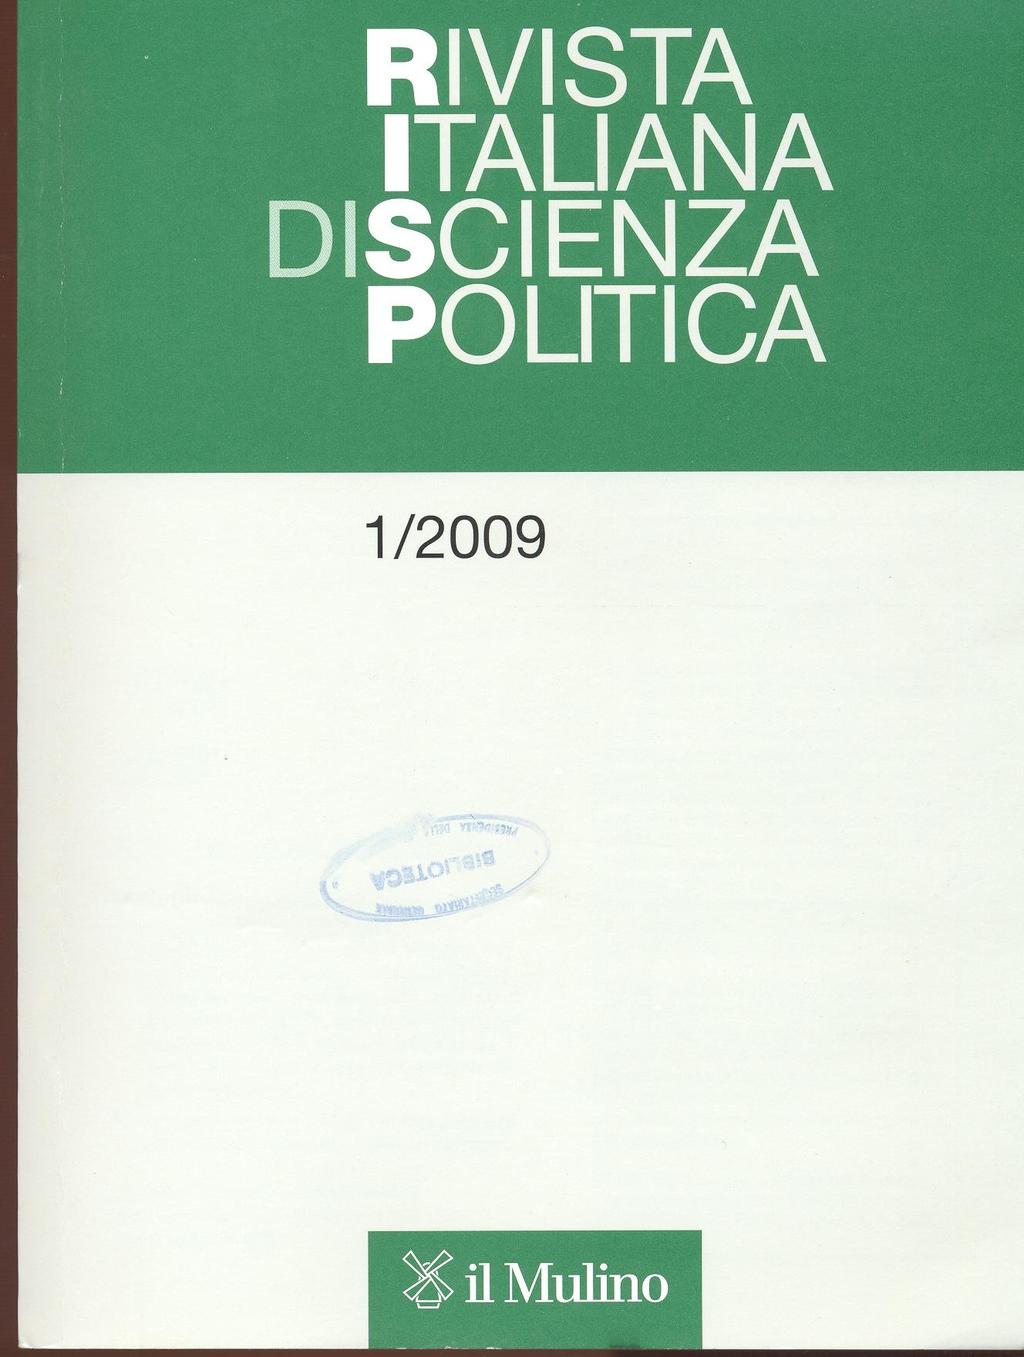 RIVISTA ITALIANA DI SCIENZA POLITICA